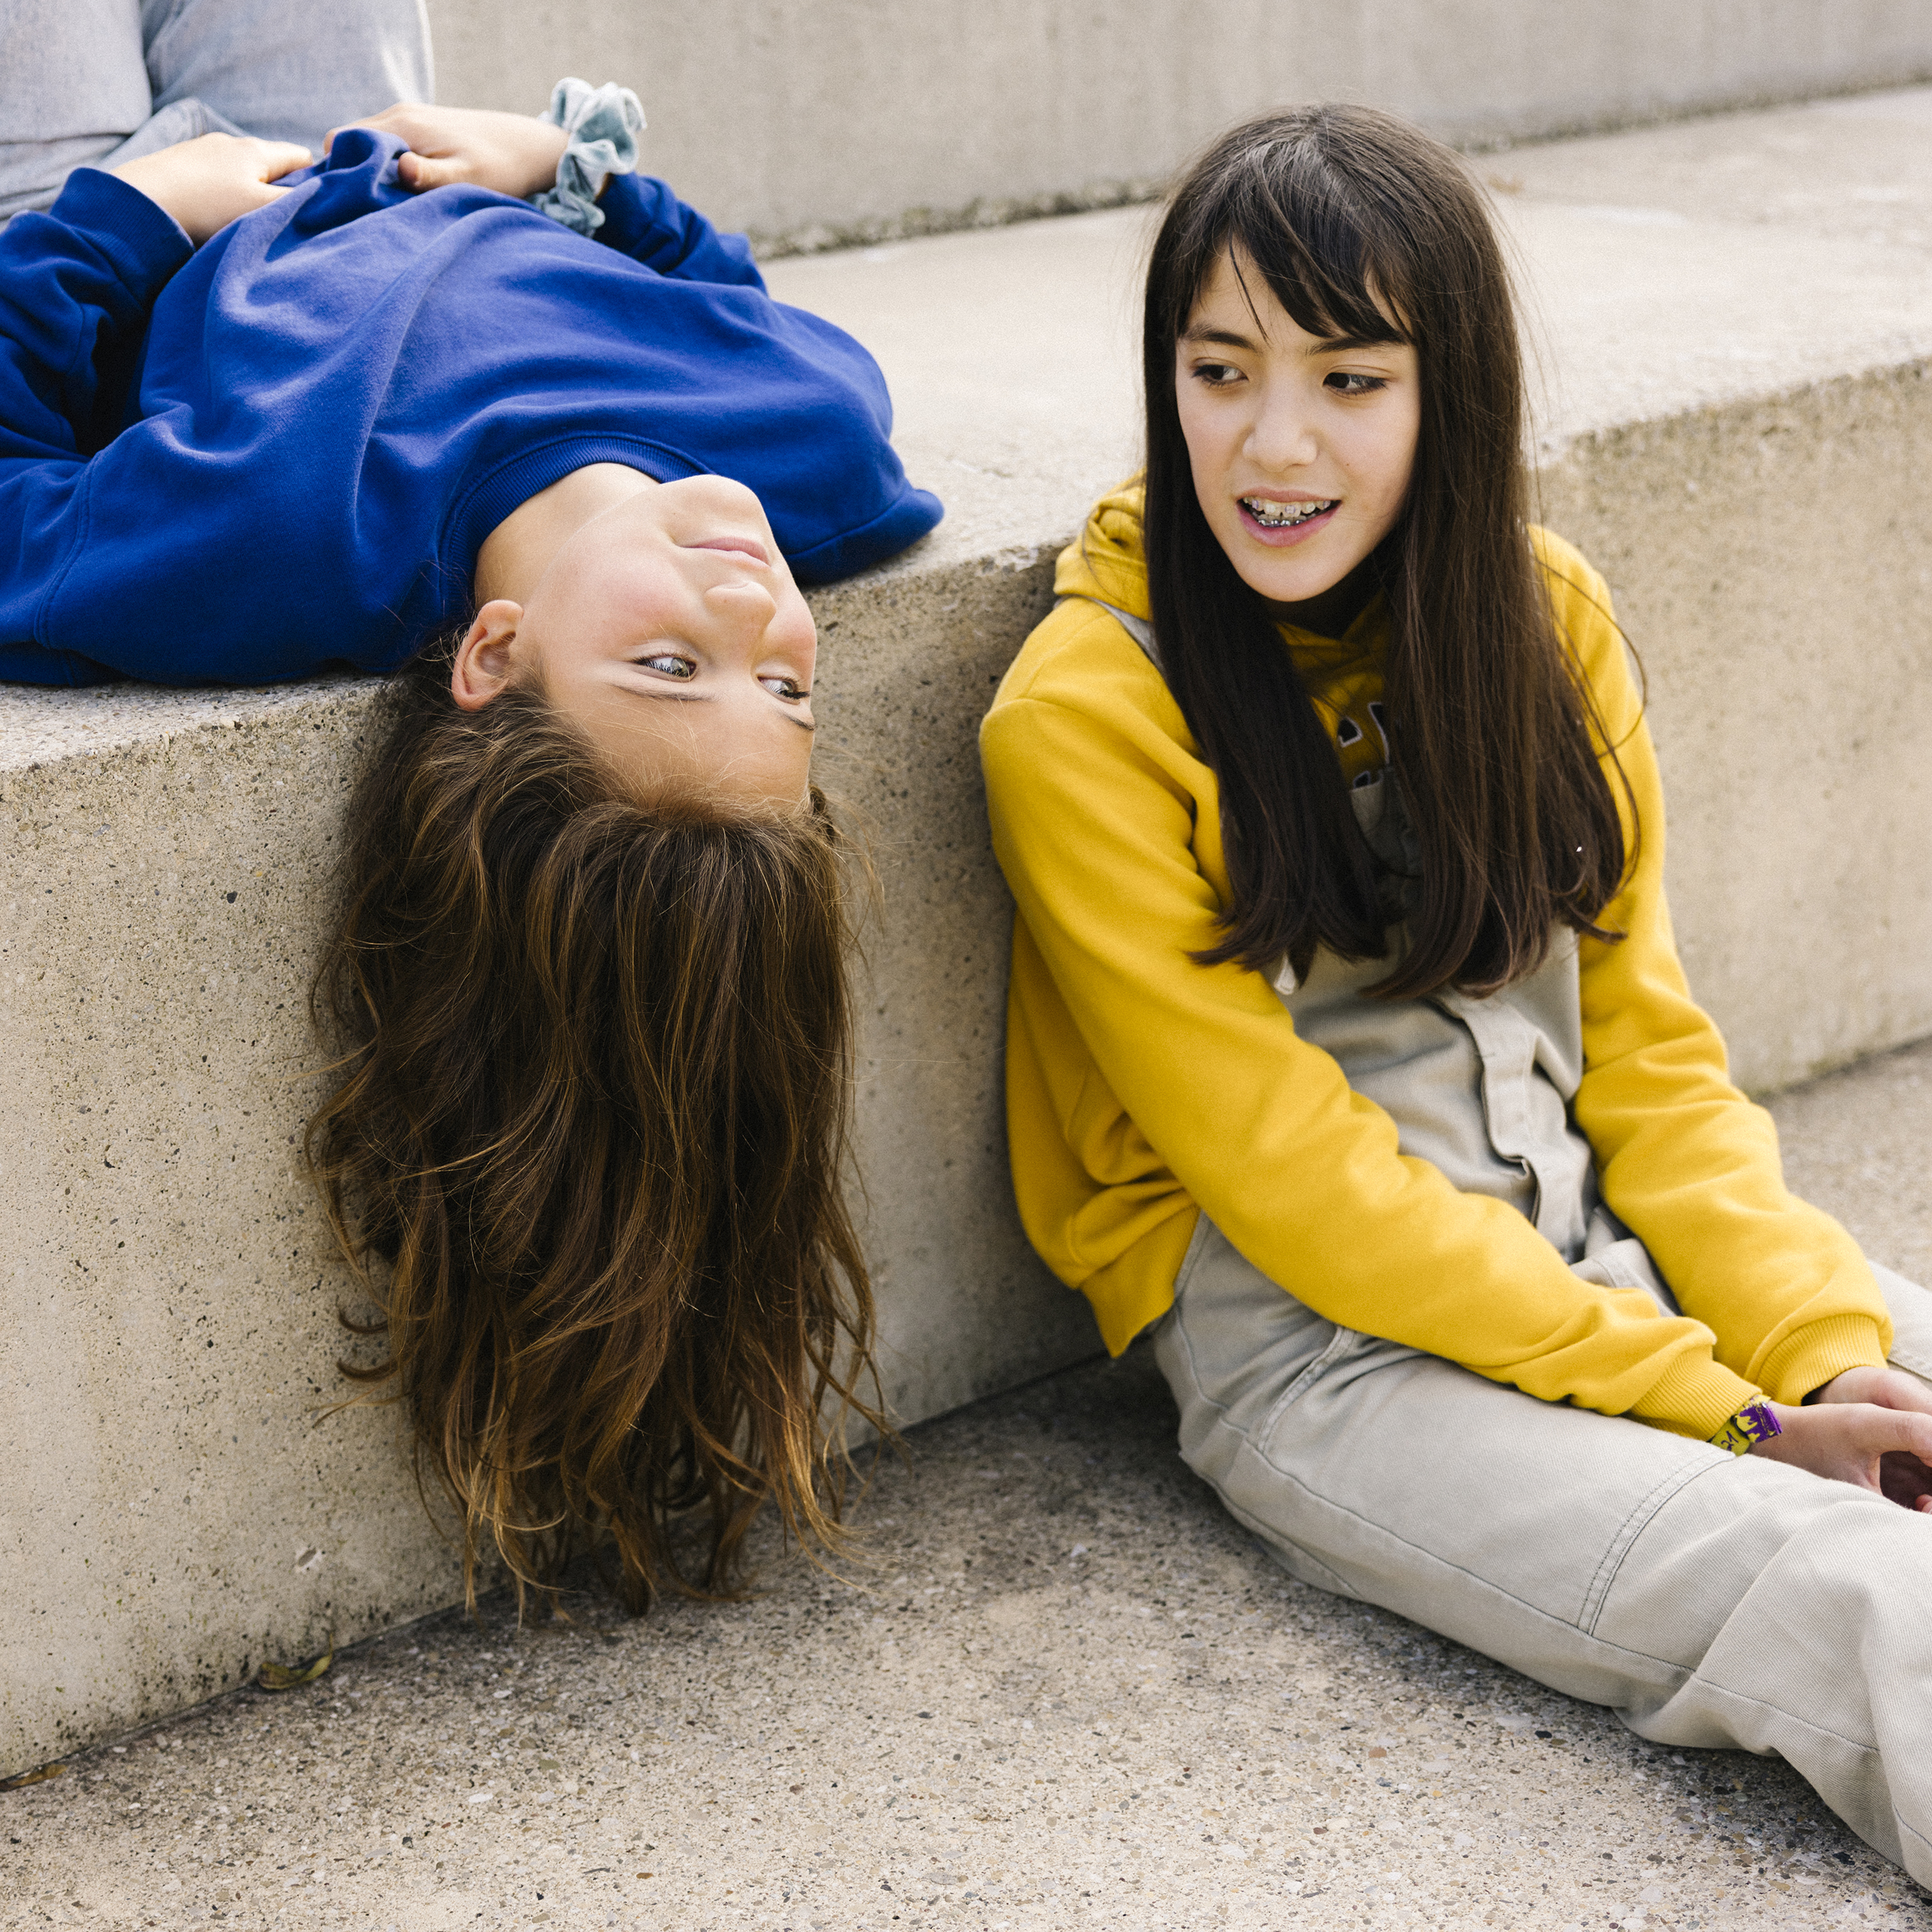 Deux adolescentes discutent sur un escalier en béton, l’une est assise sur une marche, tandis que l’autre allongée sur le dos laisse pendre sa tête sur le bord de la marche supérieure.